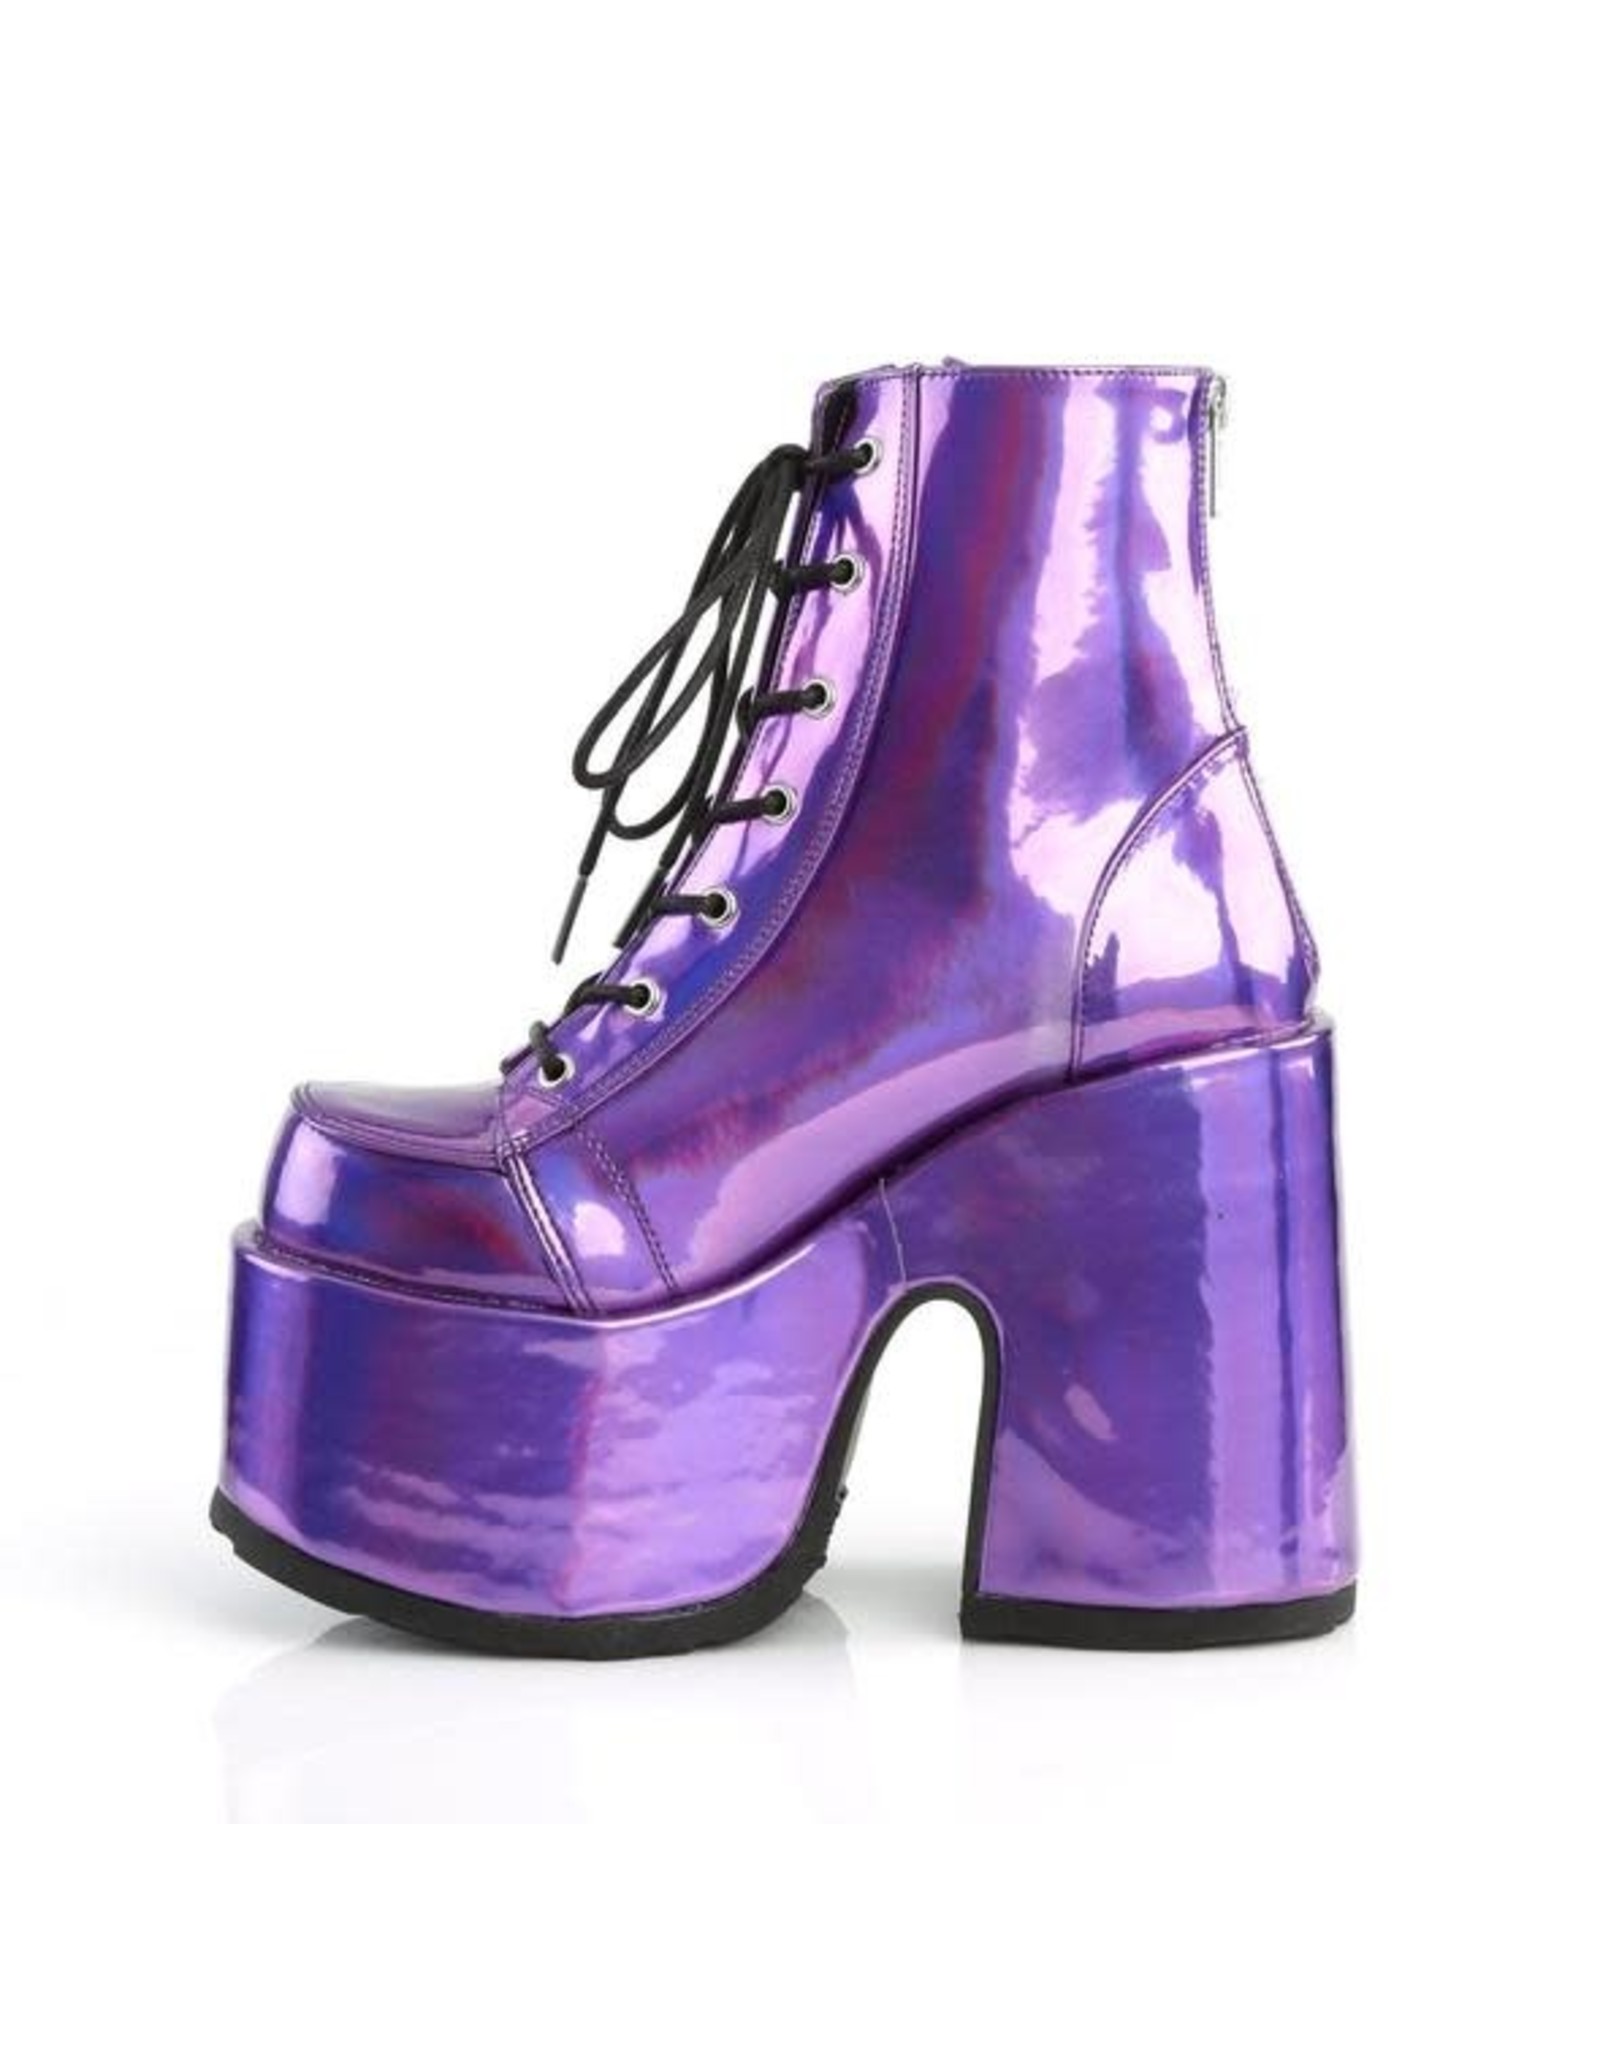 CAMEL-203 5" Chunky Heel, 3" Platform Vegan Purple Hologram Lace-Up Ankle Boot, Back Zip Closure D23VPH